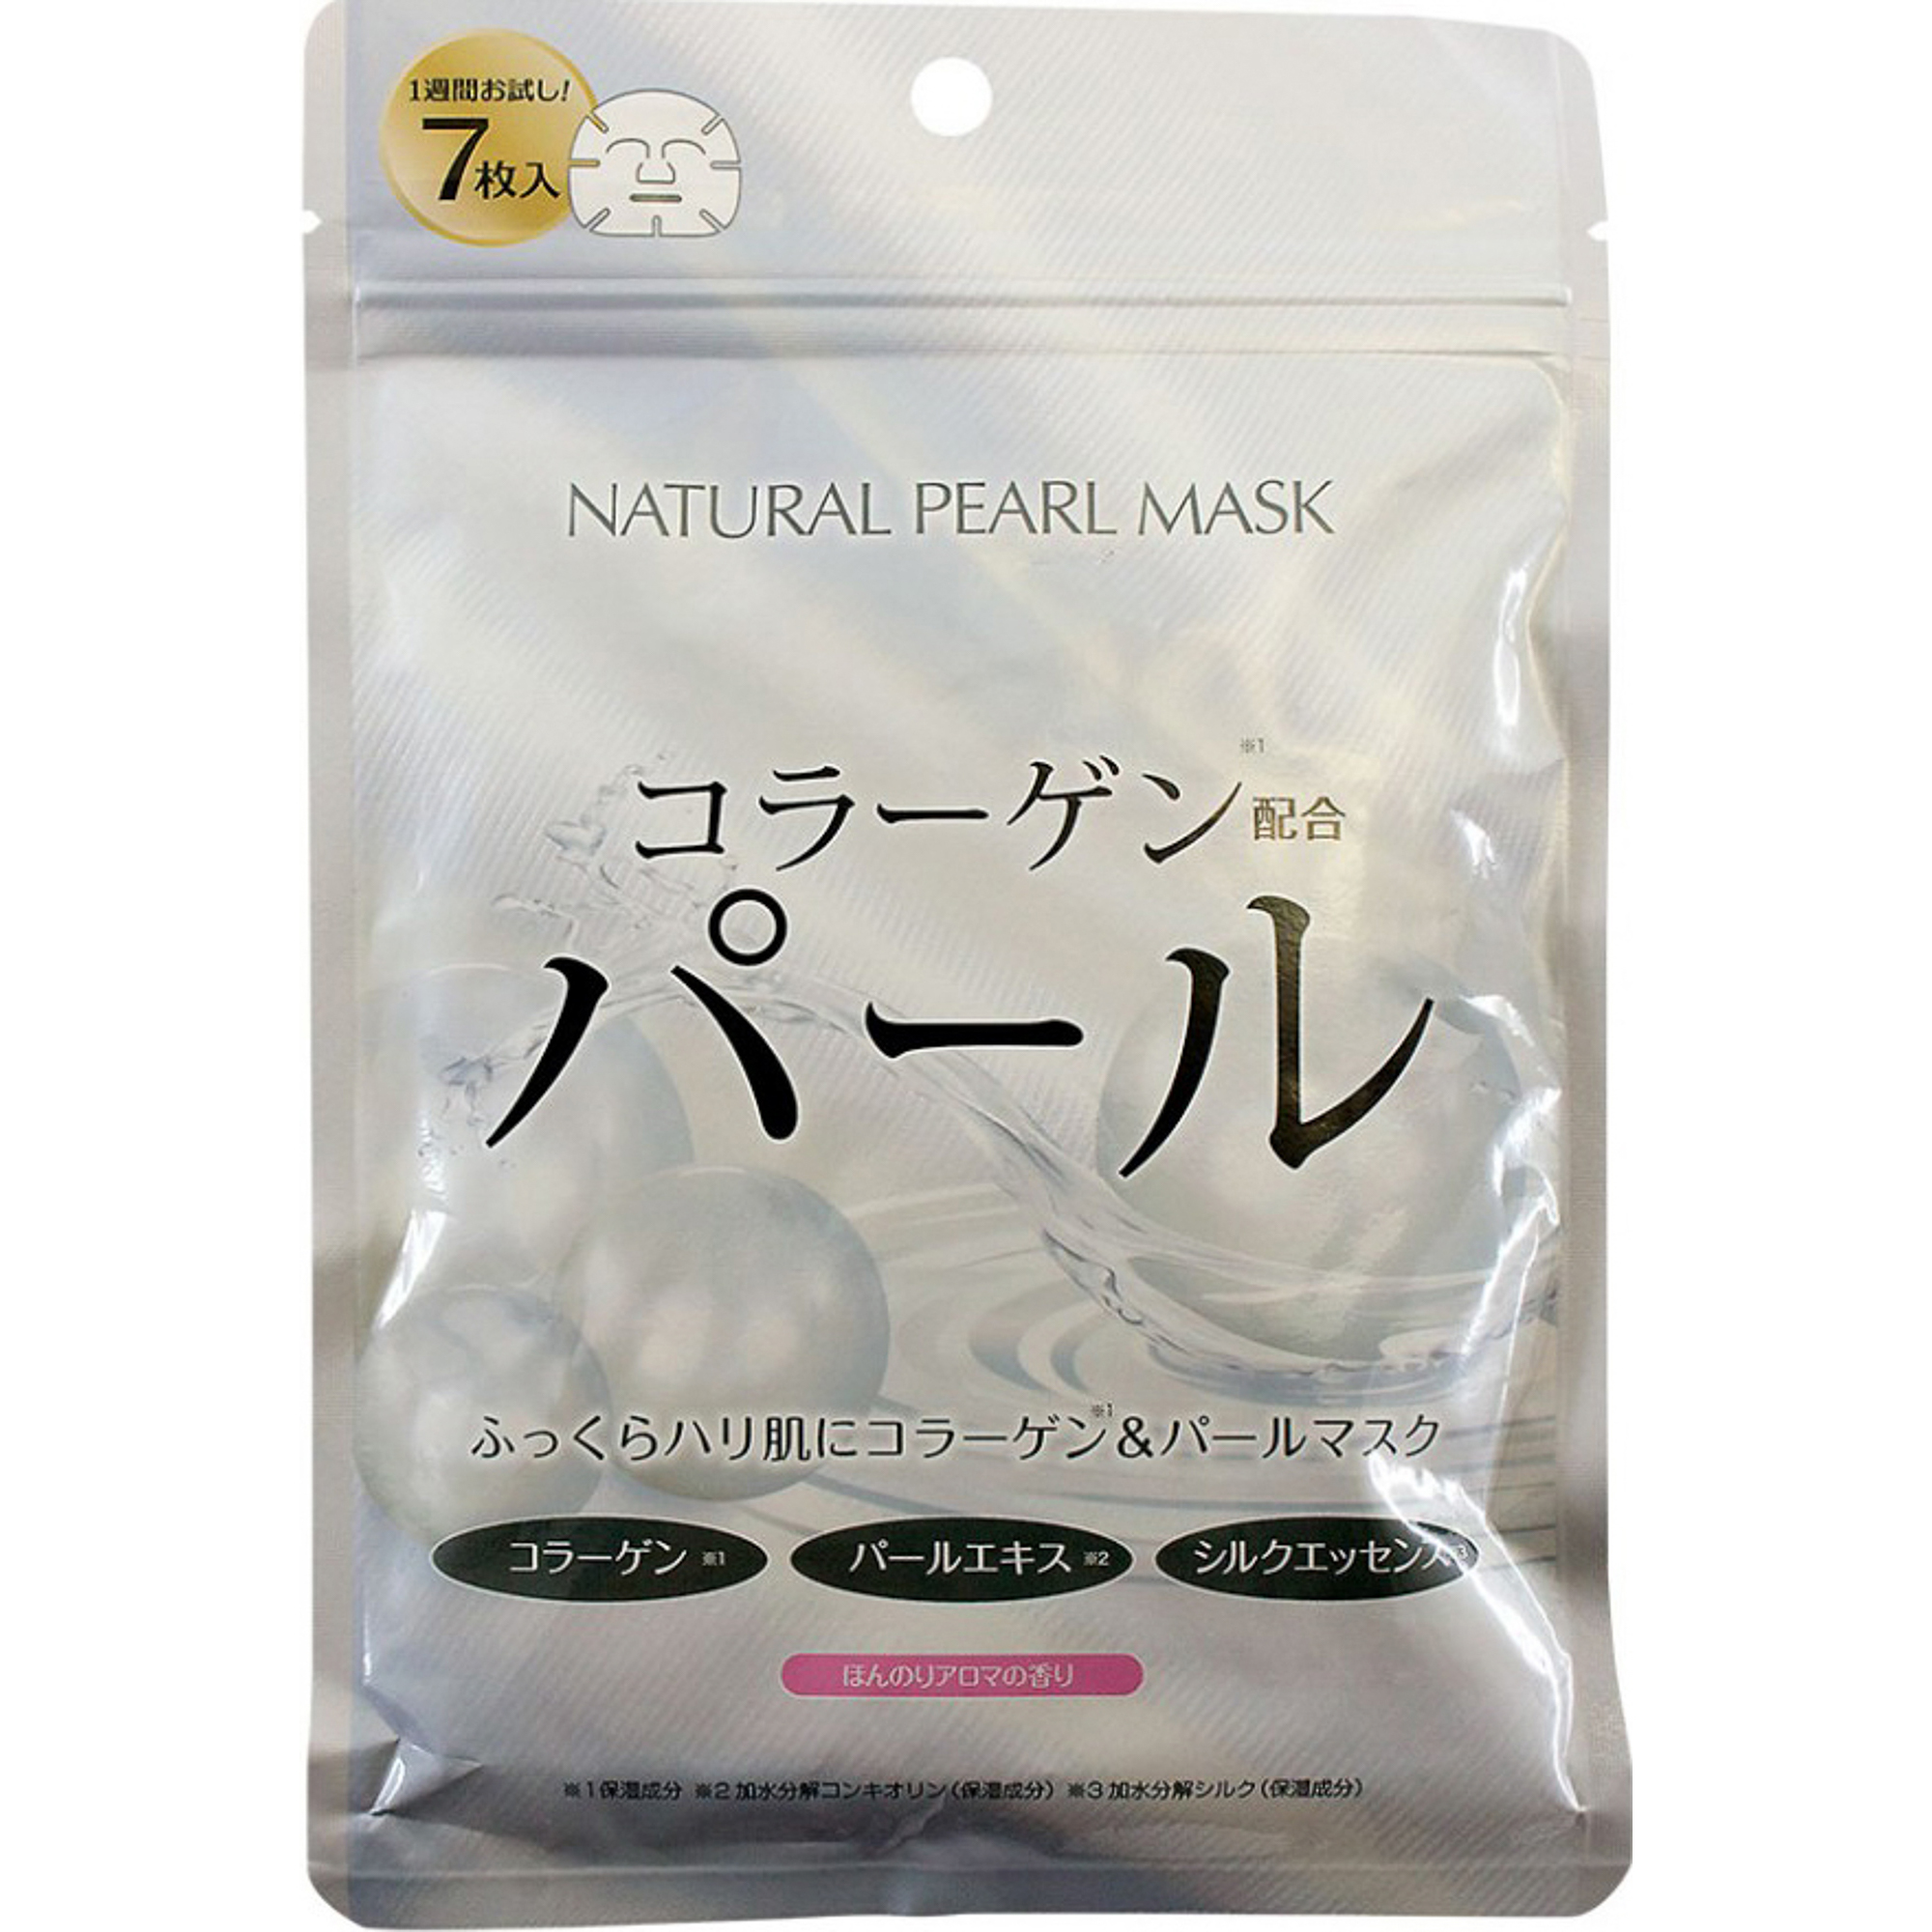 Тканевая маска Japan Gals С экстрактом жемчуга 7 шт маска bioaqua для лица тканевая с экстрактом молока 30 г